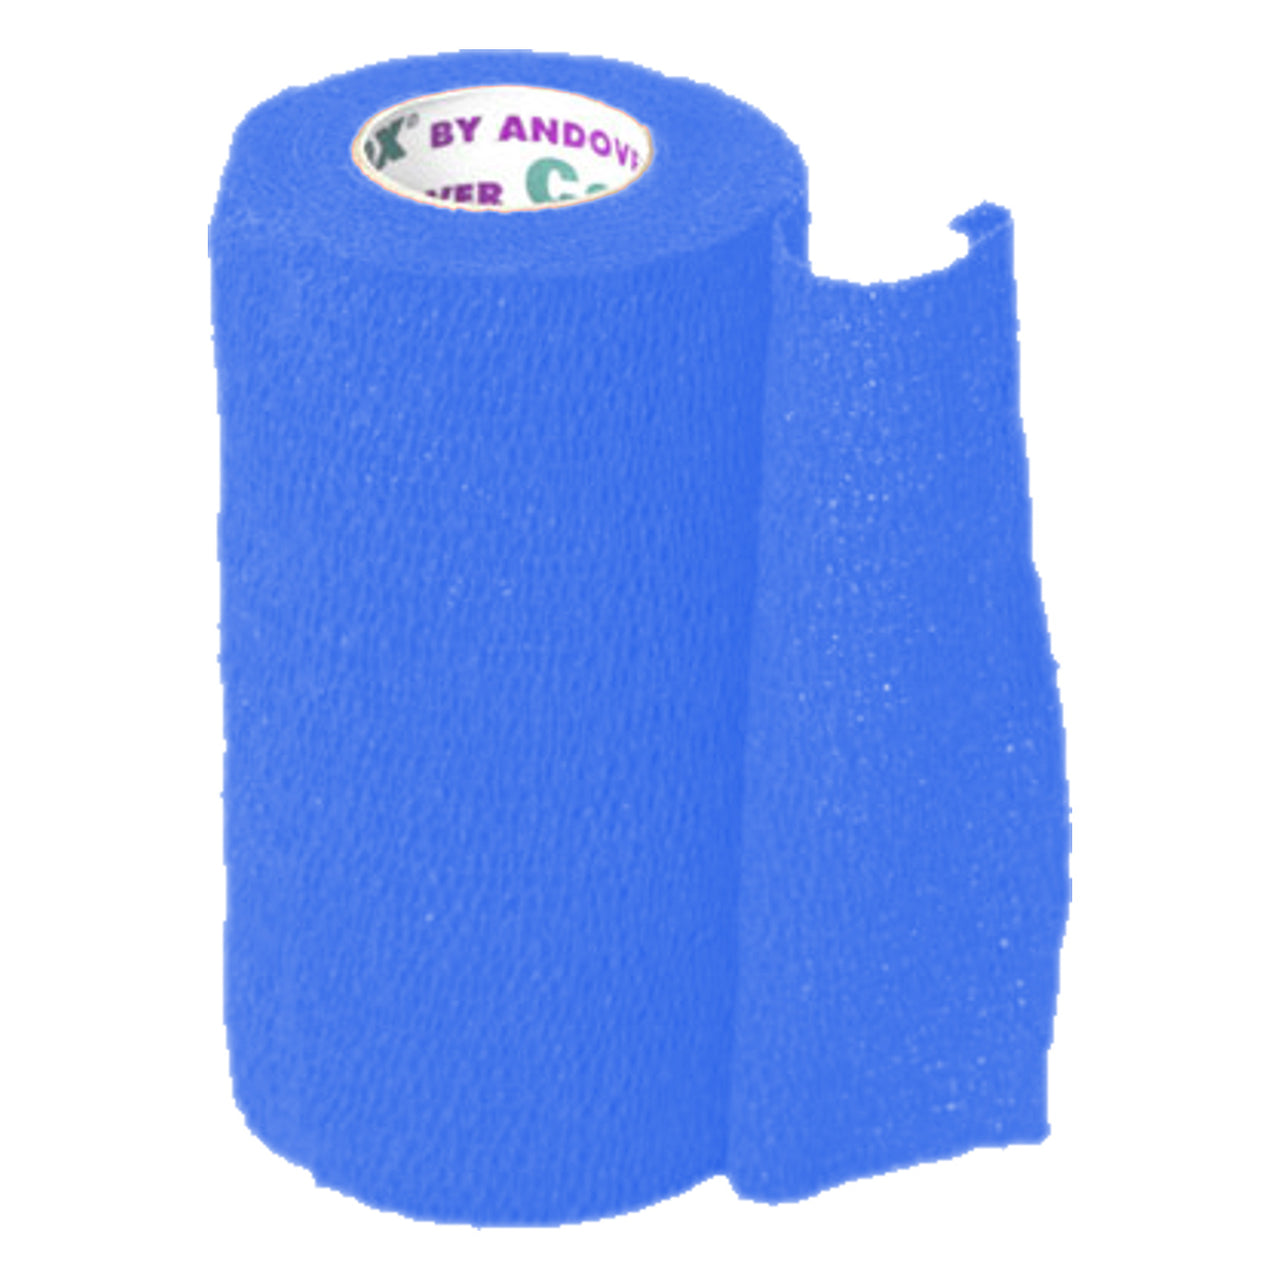 Andover Coflexvet 4X 15 Bandage (Light Blue) - Wound Dressing Andover - Canada